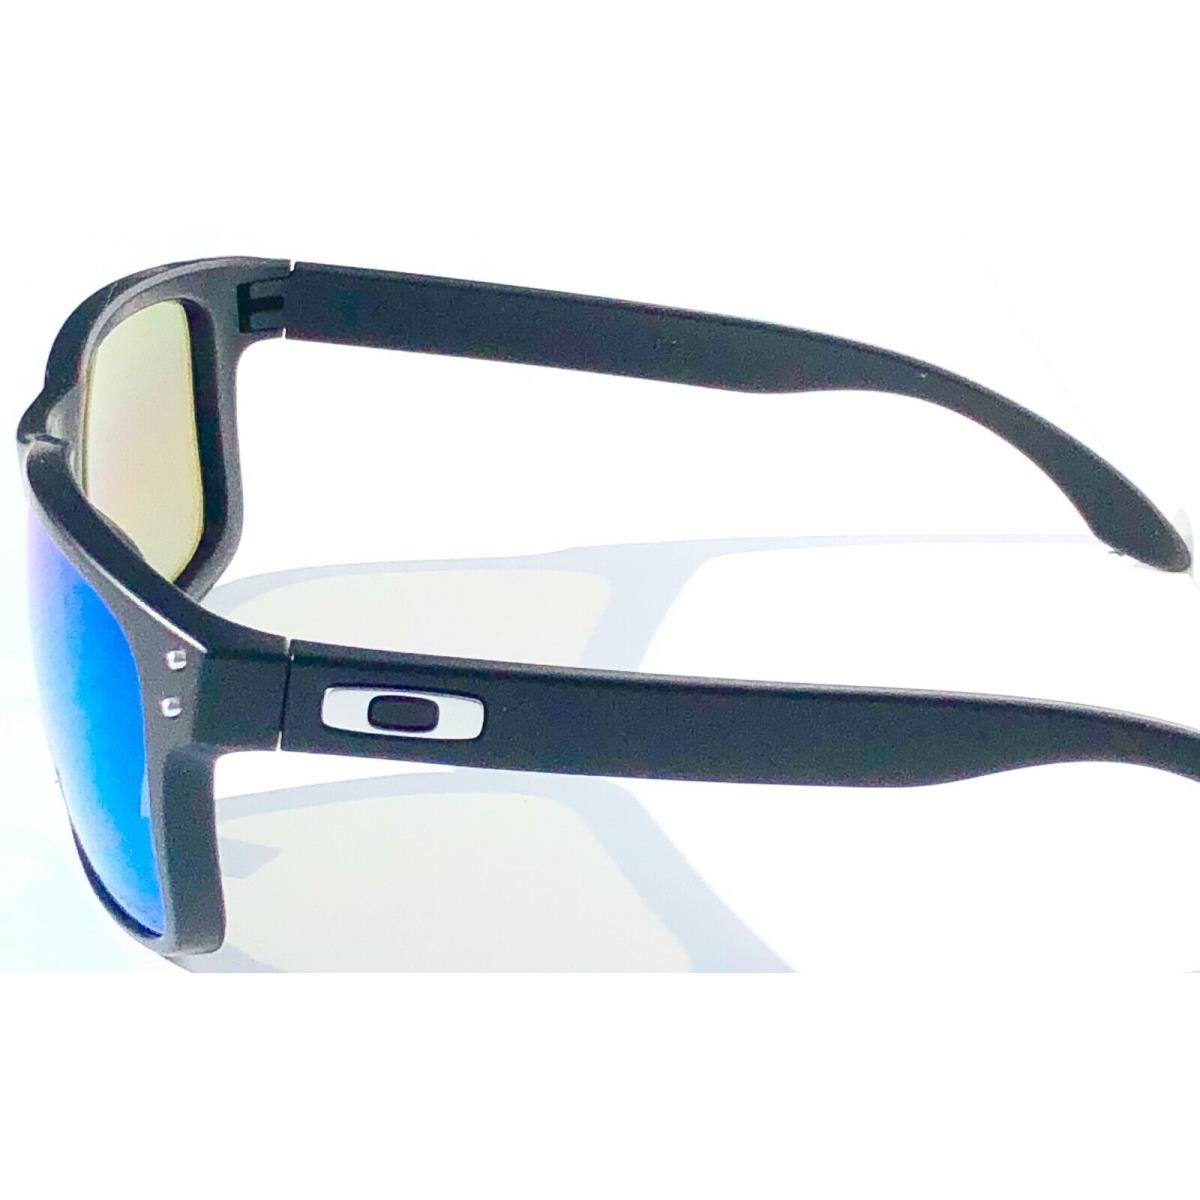 Oakley sunglasses Holbrook - Black Frame, Blue Lens 5